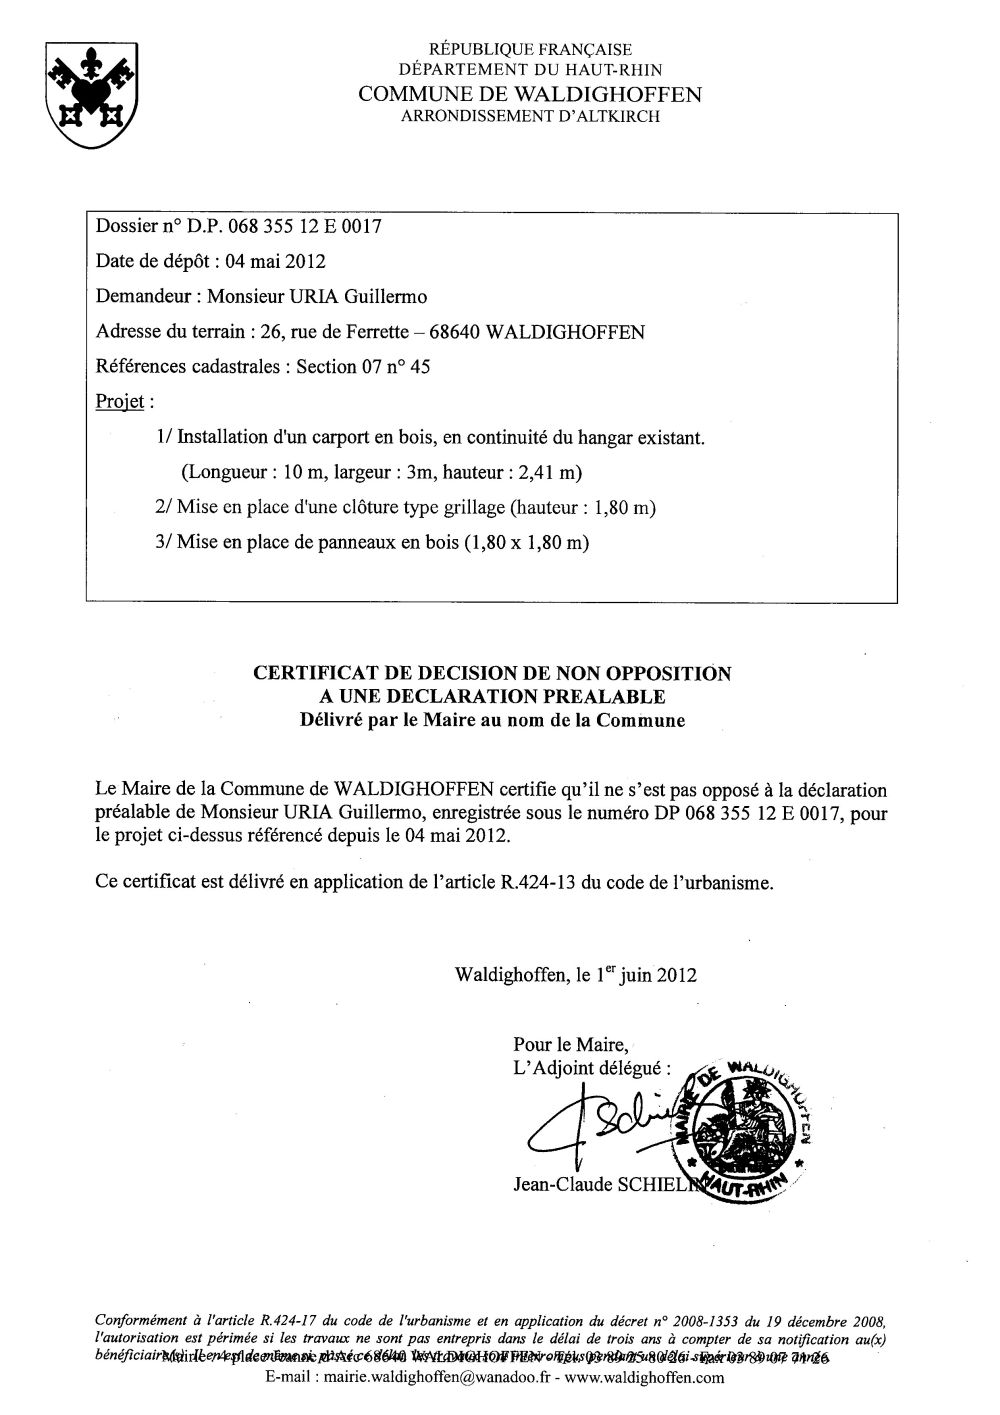 Non-opposition à la déclaration préalable n°12E0017 - M. URIA